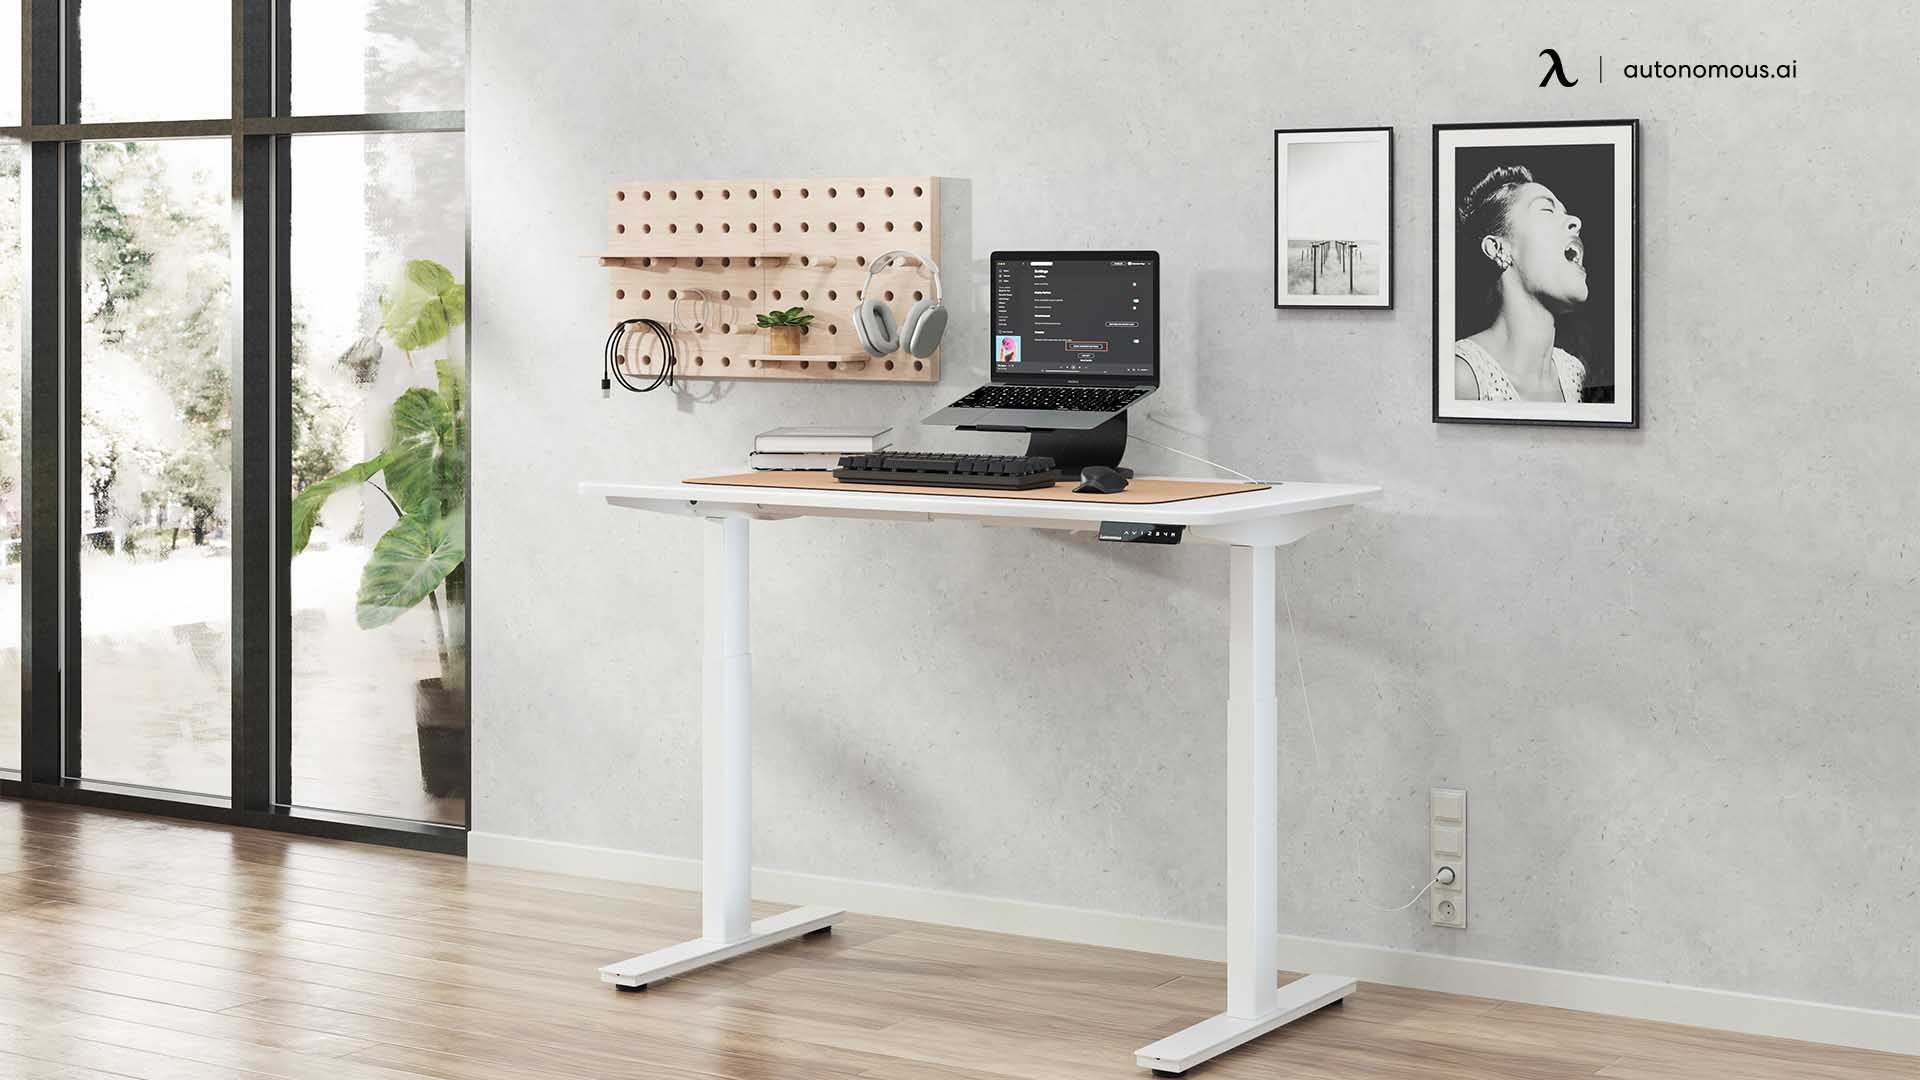 Go Minimal cute desk décor